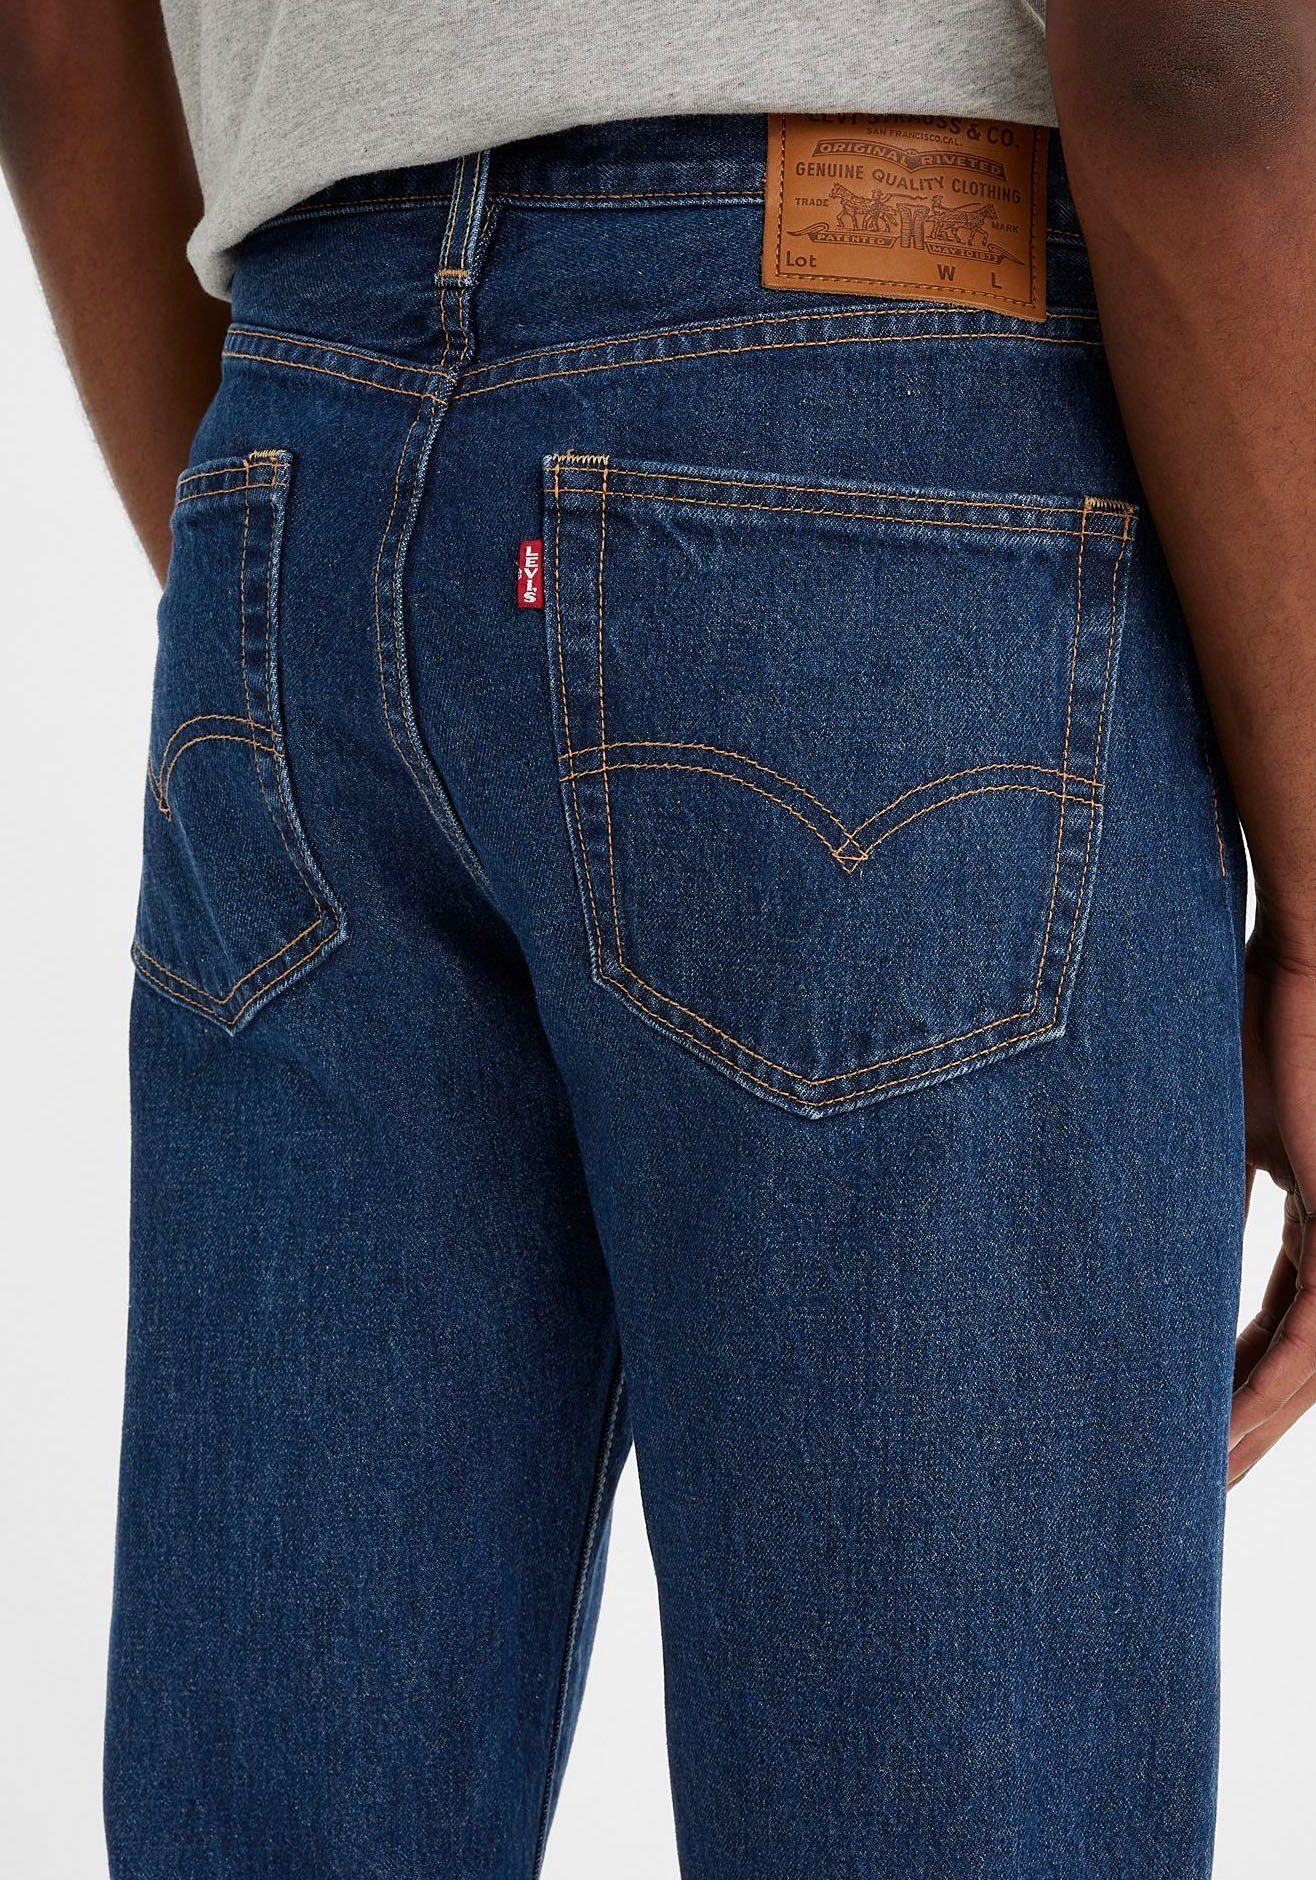 AUTHENTIC dreams Levi's® vivid mit Lederbadge 551Z Straight-Jeans